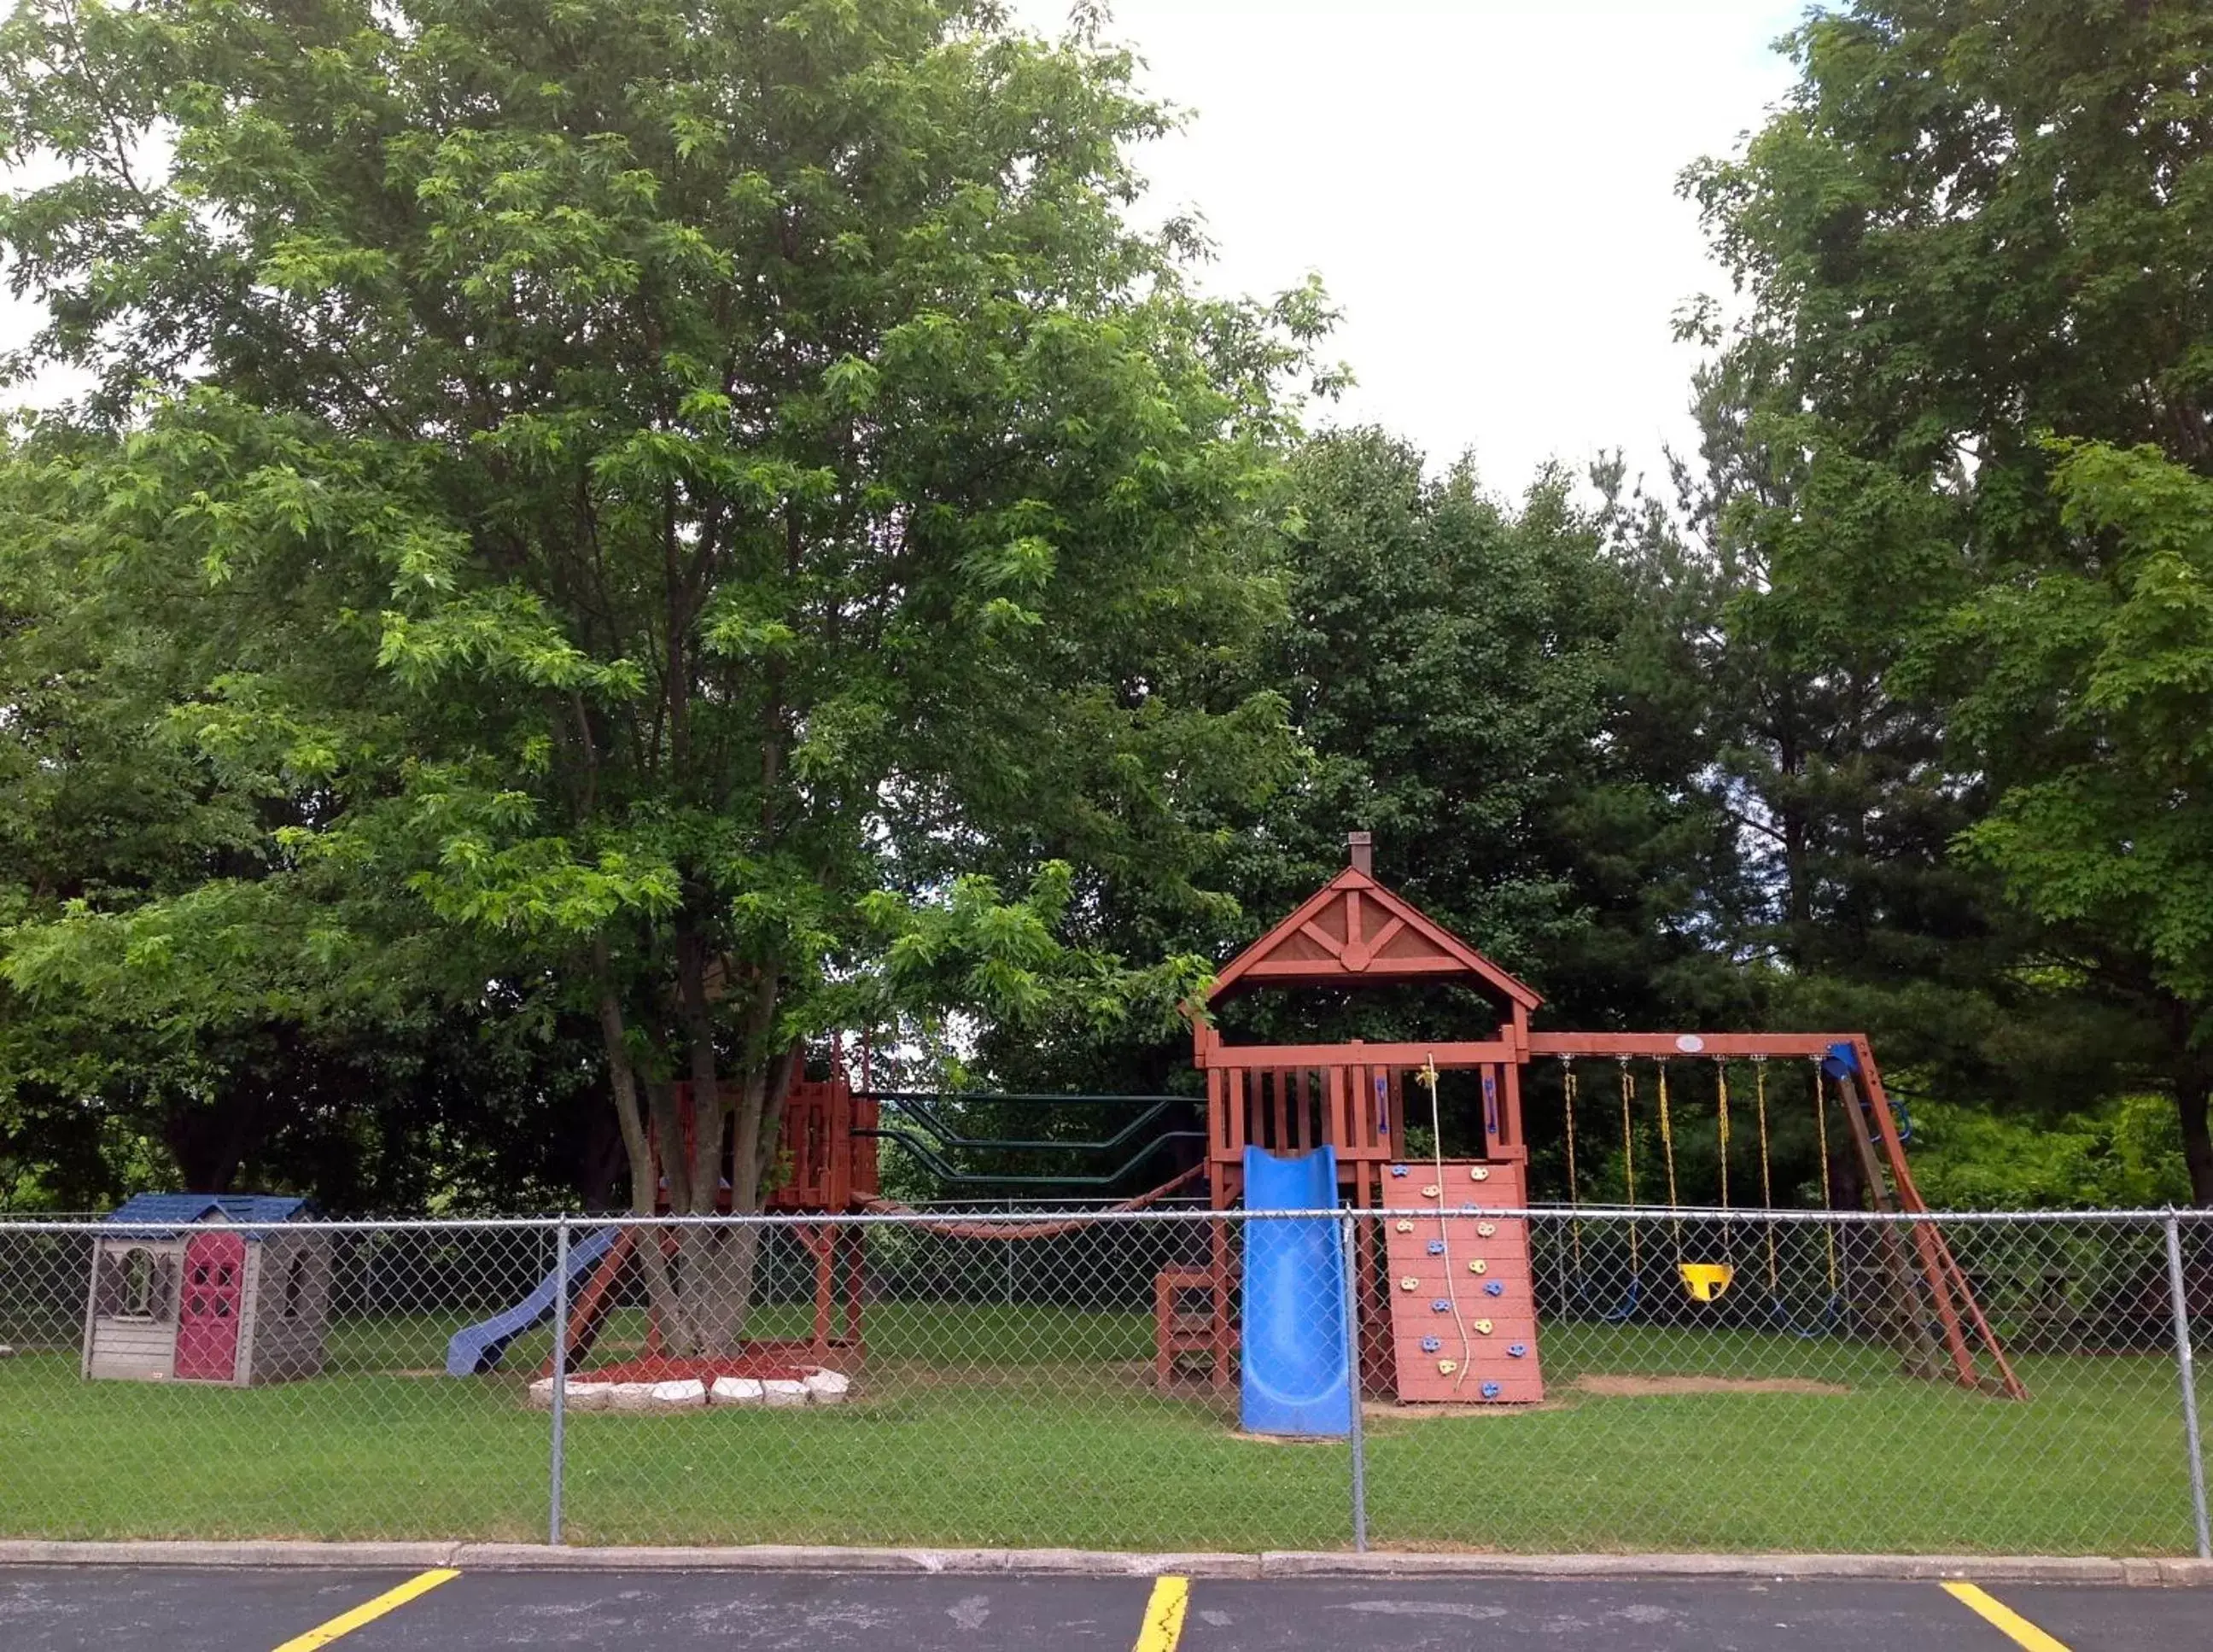 Children play ground, Children's Play Area in Days Inn by Wyndham Staunton